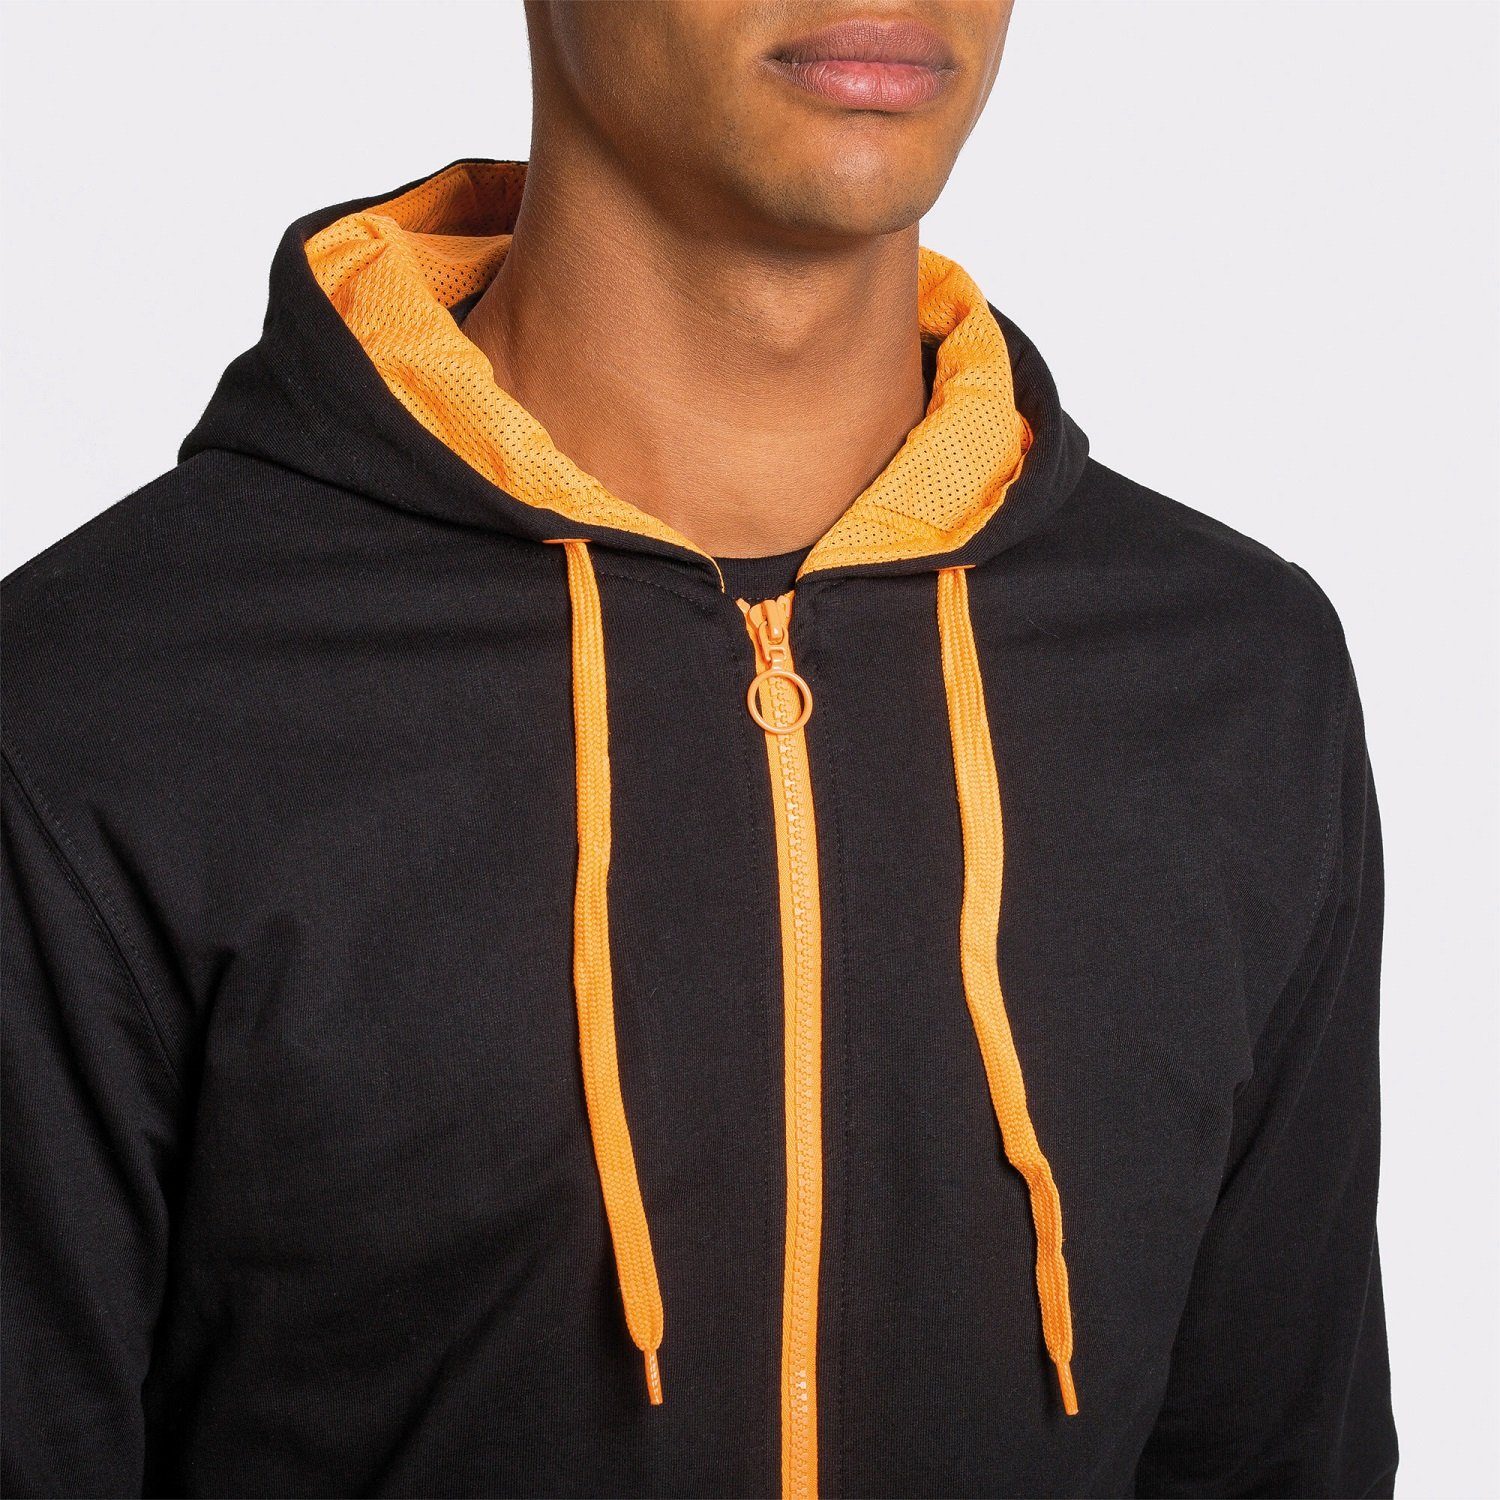 Orange Roly Herren für mit auch Kapuzensweater Kapuze Frauen Reißverschluss Sweat-Jacke Grau/ geeignet Kapuzensweatjacke mit /